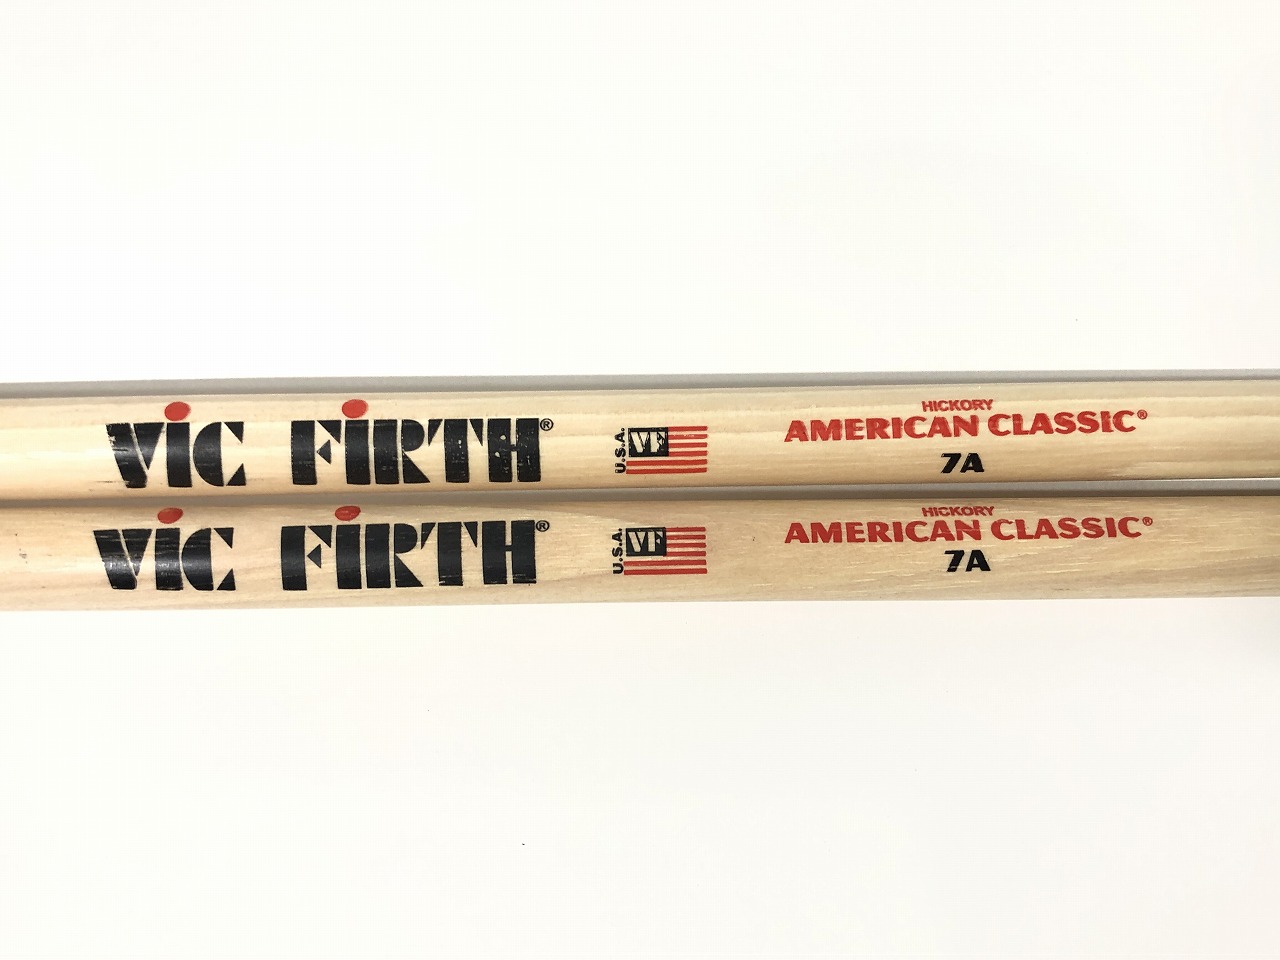 VIC-FIRH Hickory барабанная палочка american Classic 7A почти не использовался стоимость доставки 185 иен 